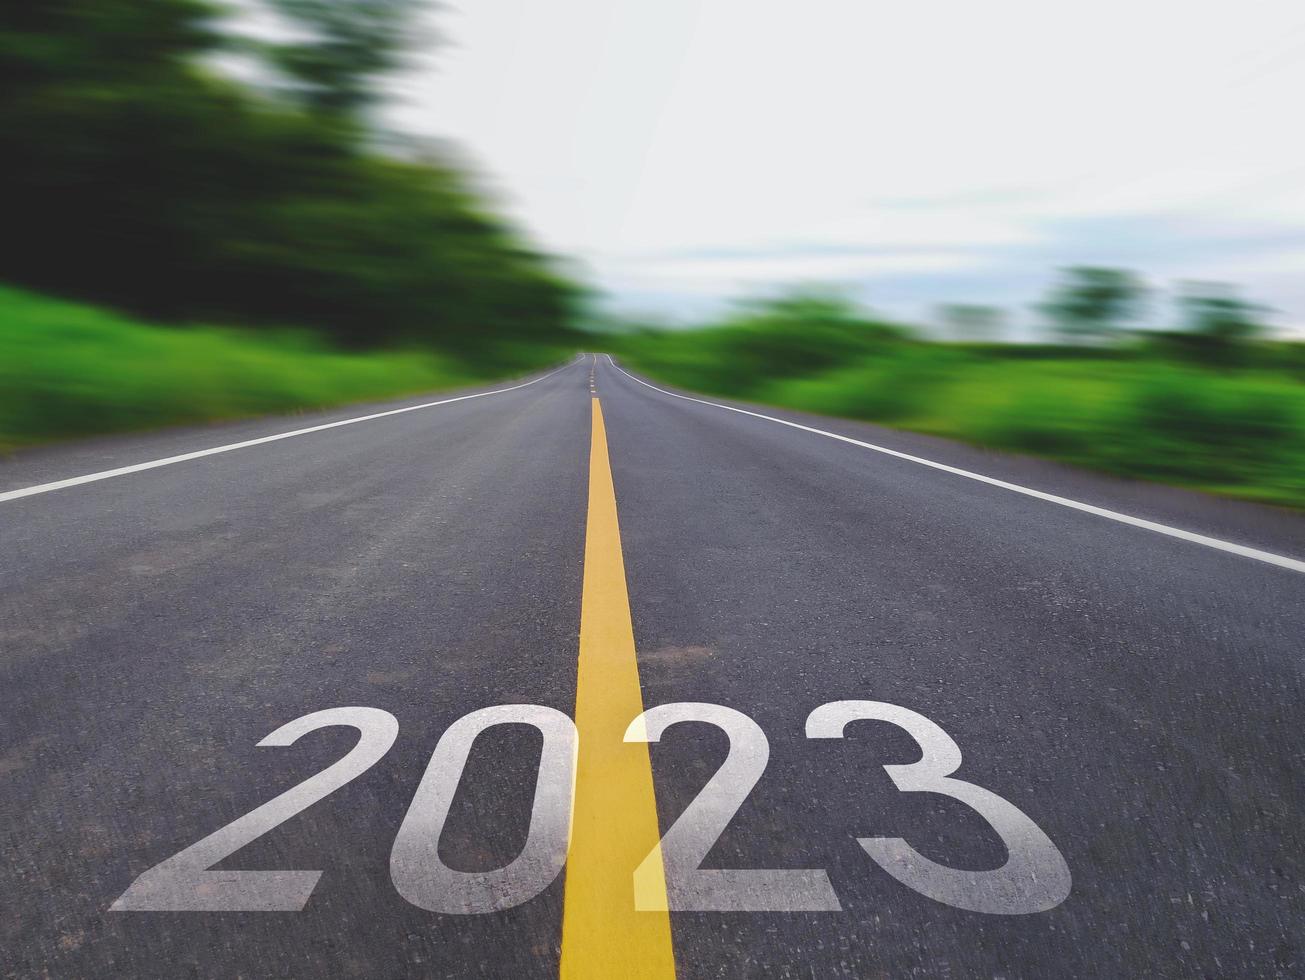 concetto di nuovo anno e nuovo strada con il parola 2022 per 2023 scritto su il asfalto strada nel bellissimo nazione strada con verde erba campo i campi su tutti e due lati concetto per il nuovo anno o visione di 2023 foto